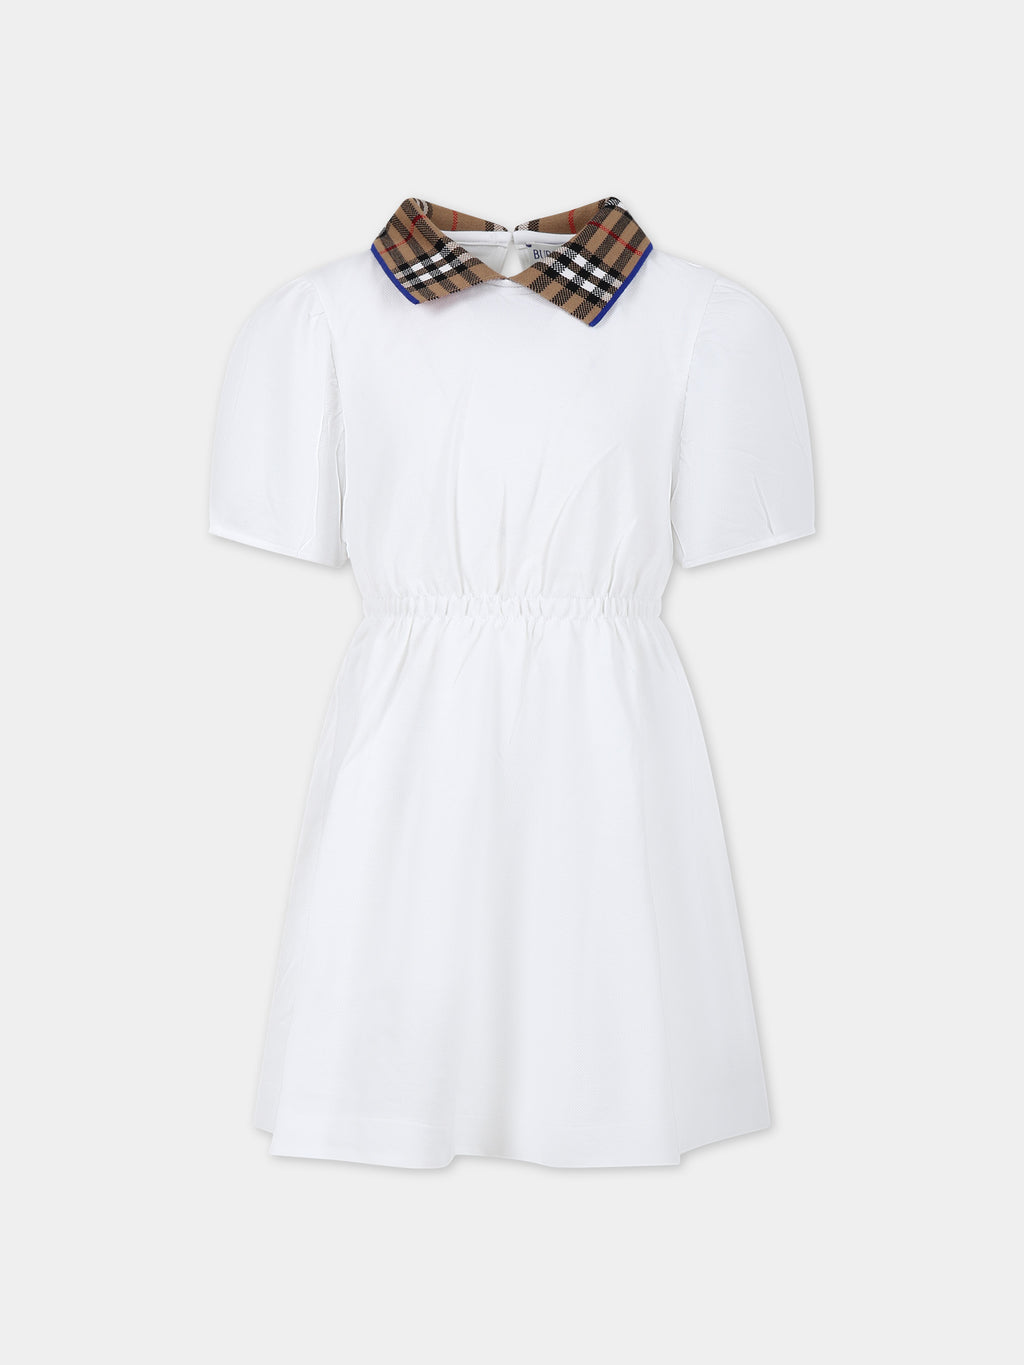 Vestito bianco per bambina con check vintage sul colletto